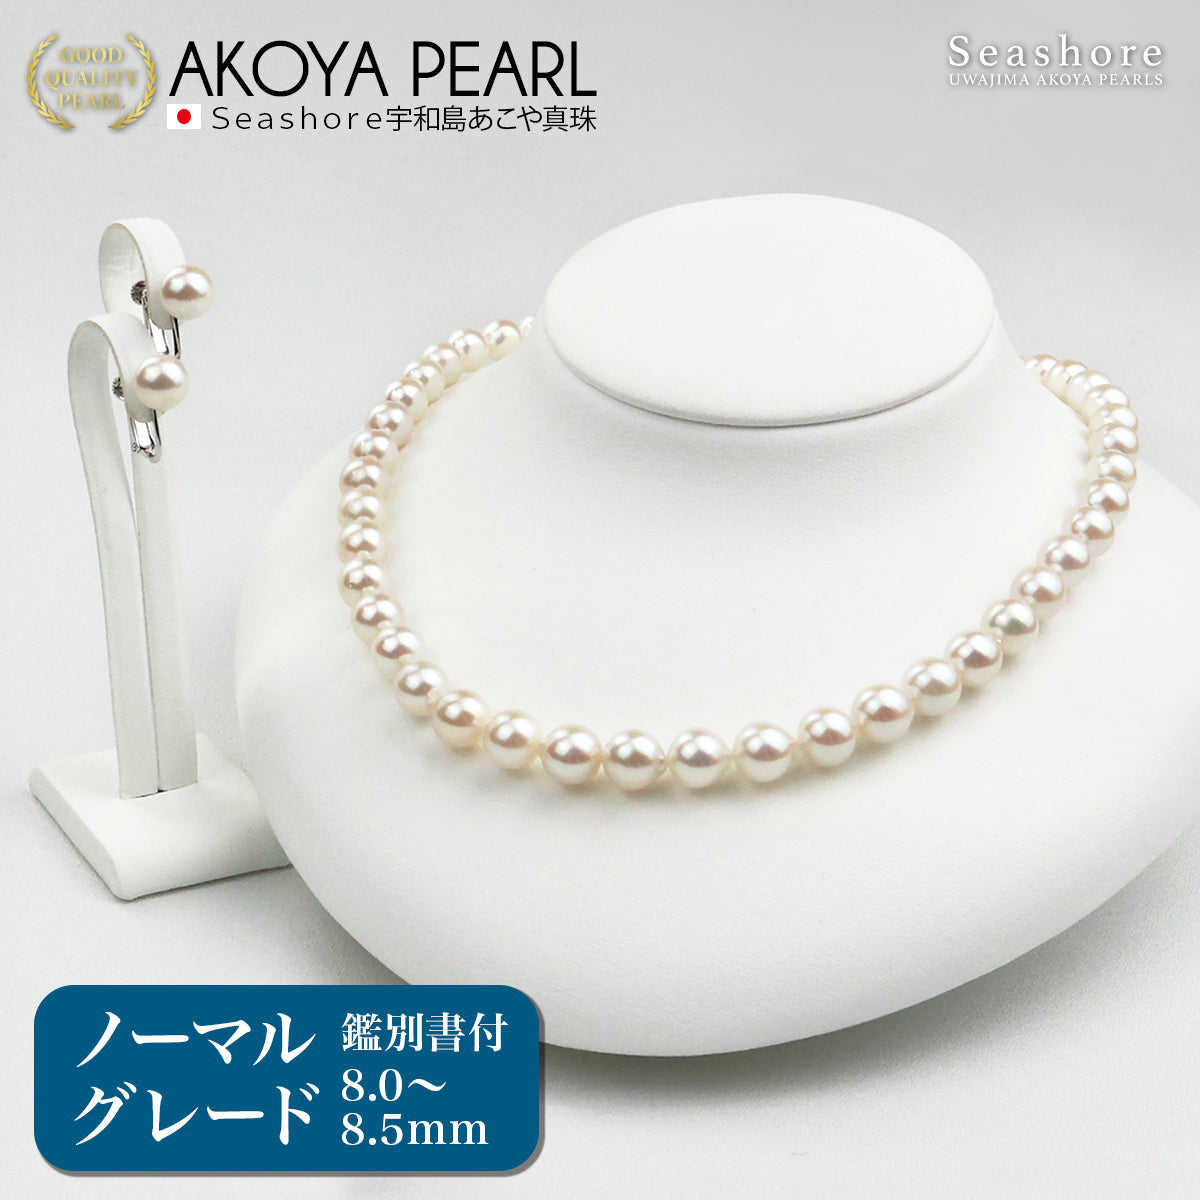 Akoya 珍珠正装项链 2 件套 [8.0-8.5 毫米]（含耳环）正装套装附真品证书和收纳盒 [电视购物]